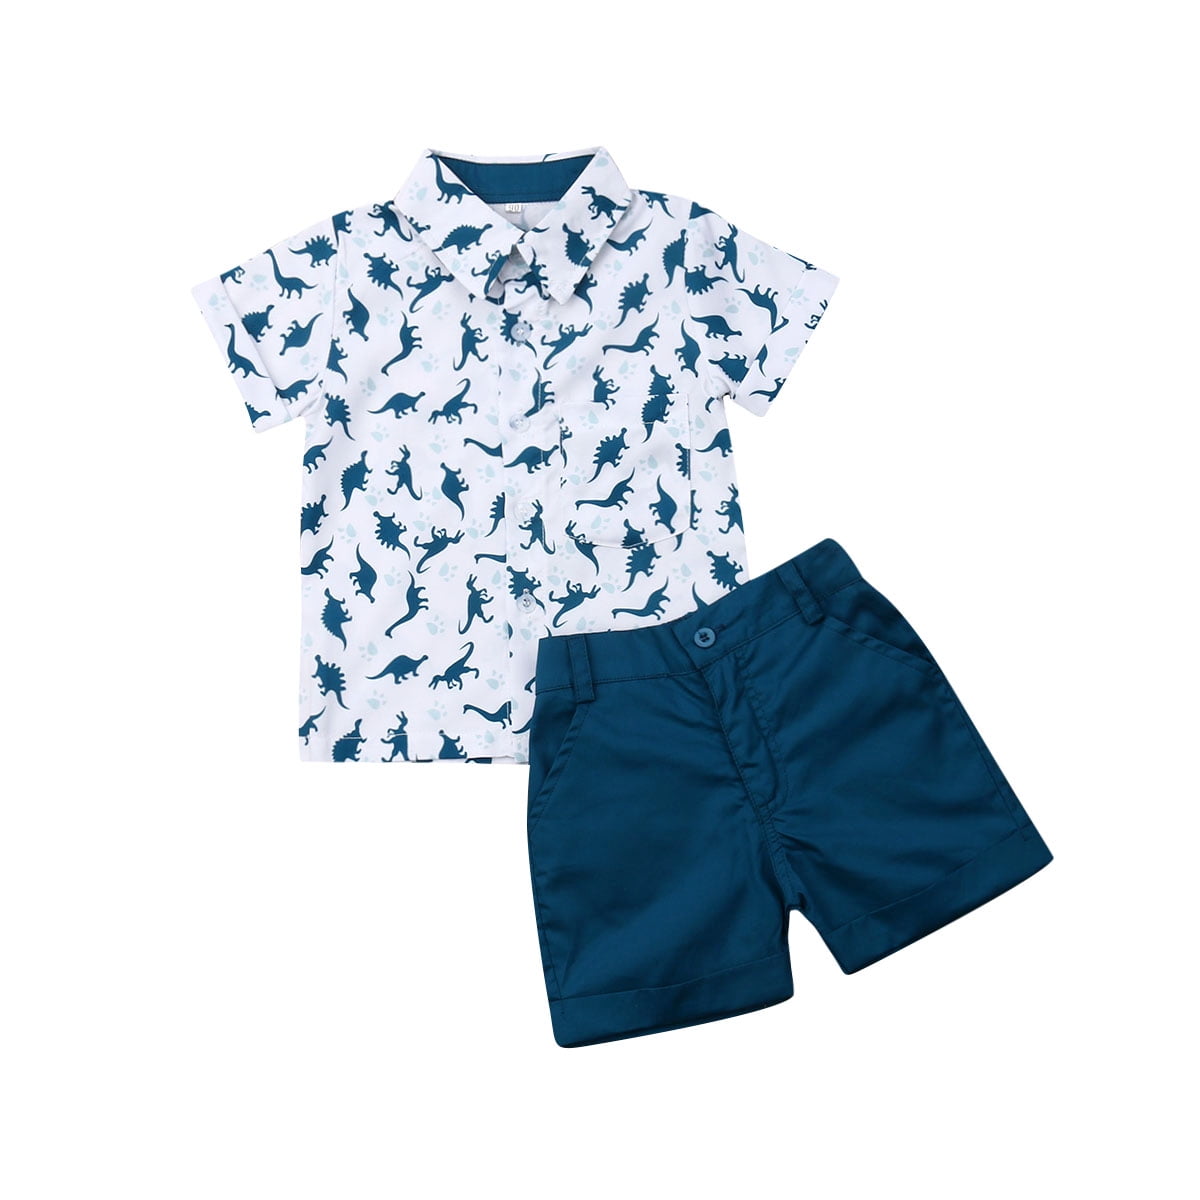 2Pcs Toddler Kid Baby Boy Shirt Print Tops T shirt+Shorts Outfits Set Pants